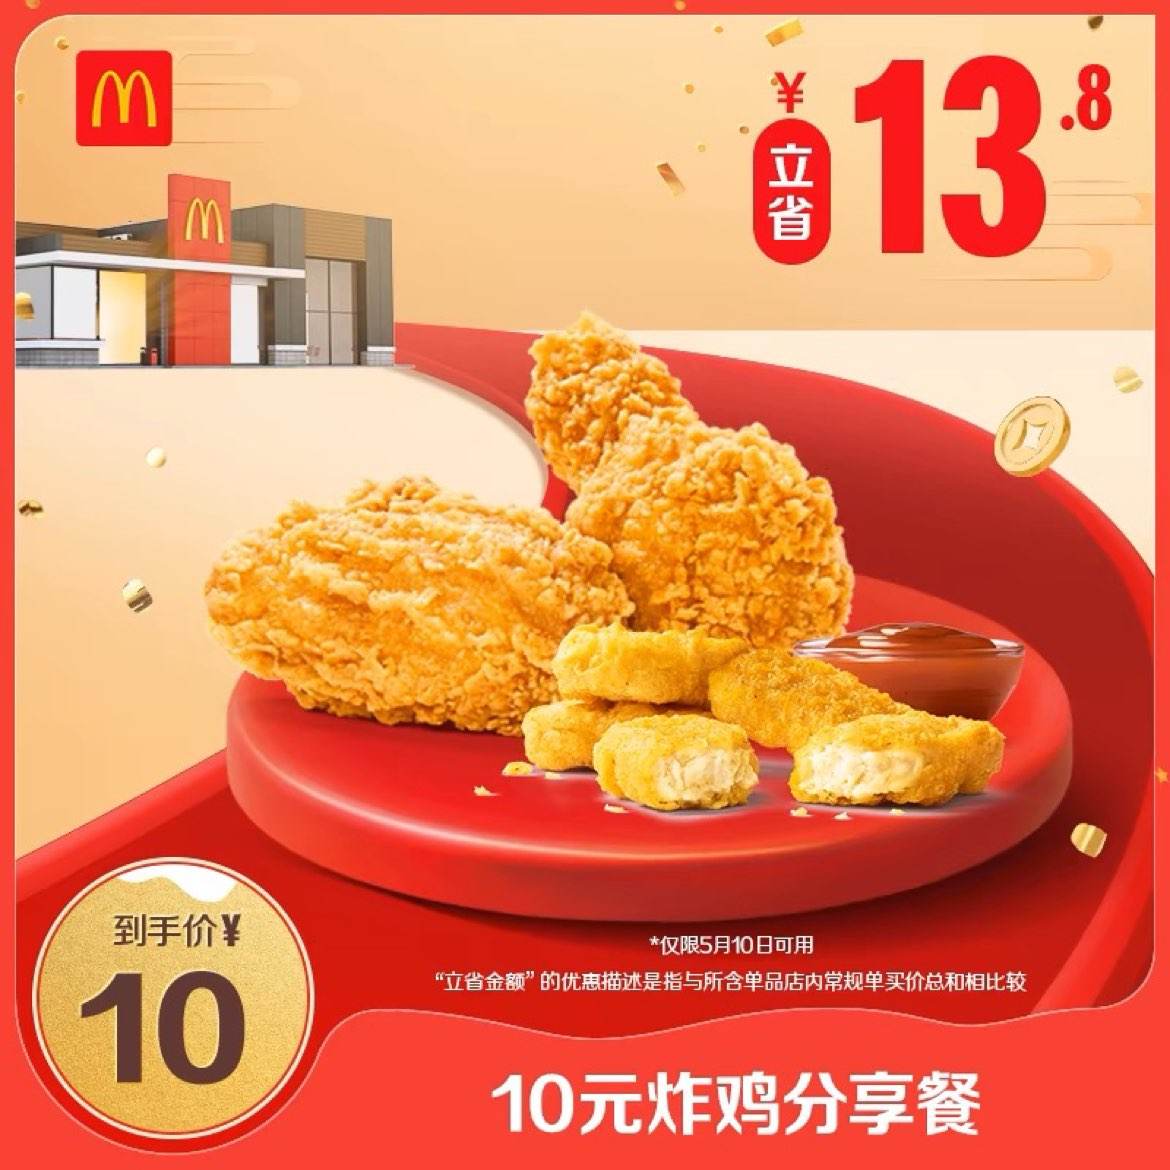 10号可用：麦当劳 会员专属 10元炸鸡分享餐 单次券 电子兑换券 10元